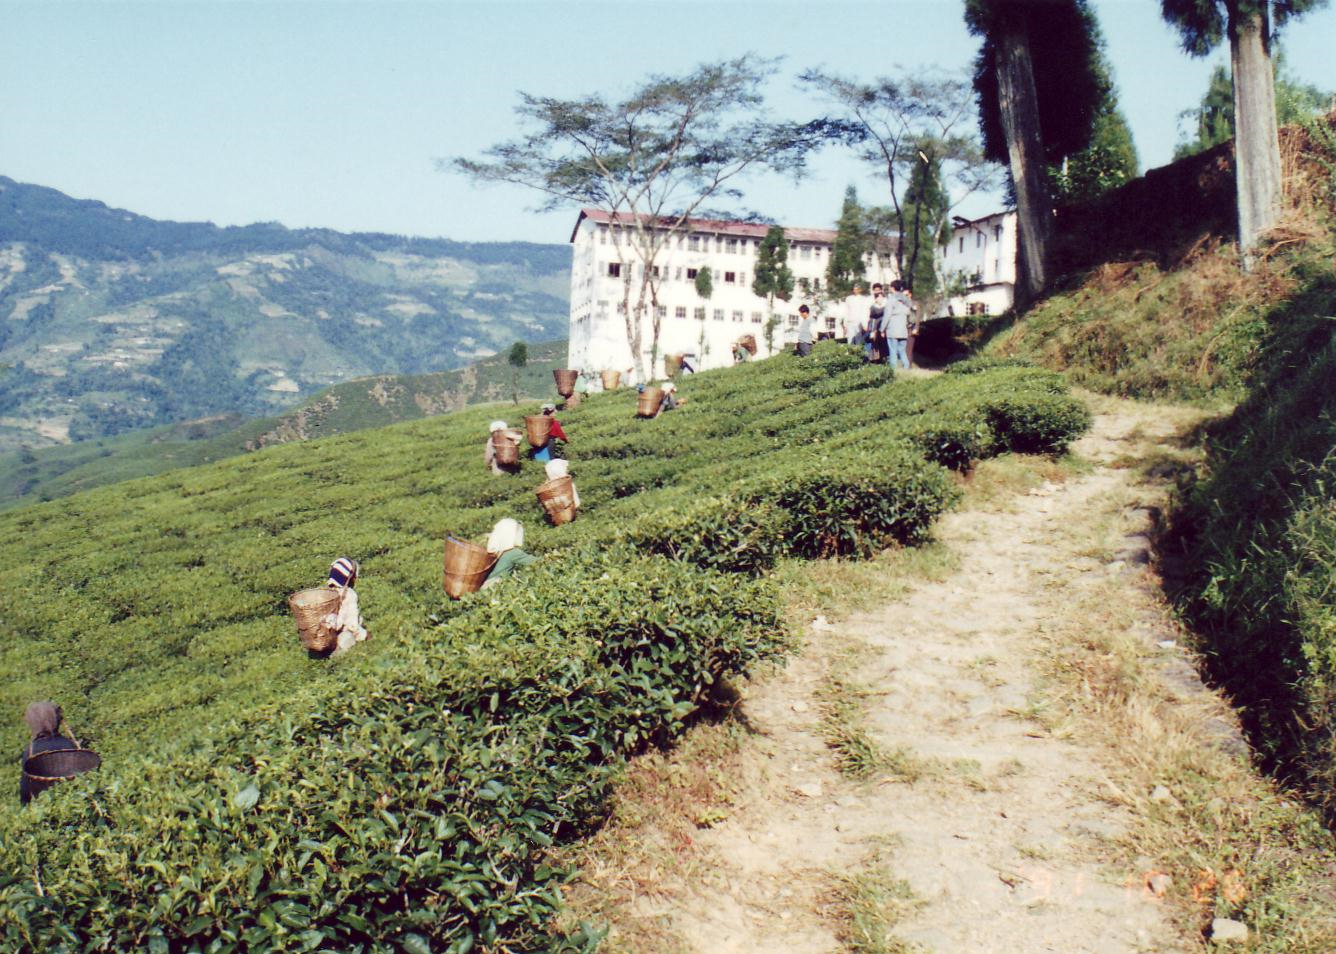 セリンボン茶園、稜線はネパール国境。